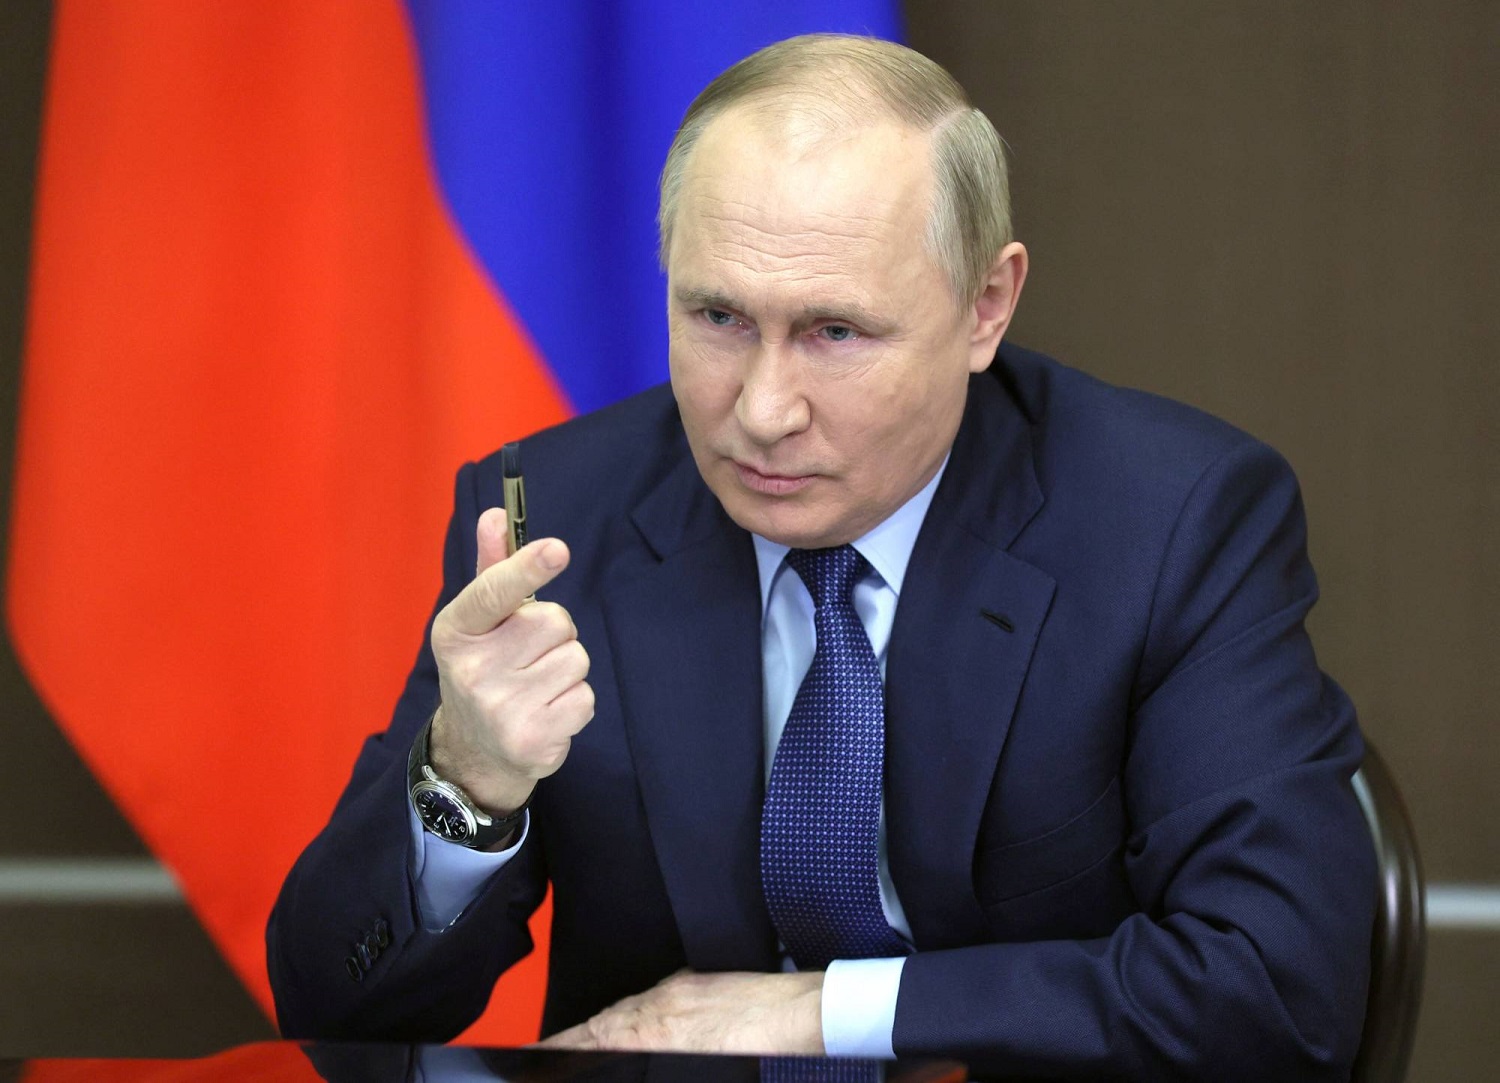 V. Putino žinutė Rusijai apie nesibaigiančias prezidento kadencijas: tai stabilizuoja šalį